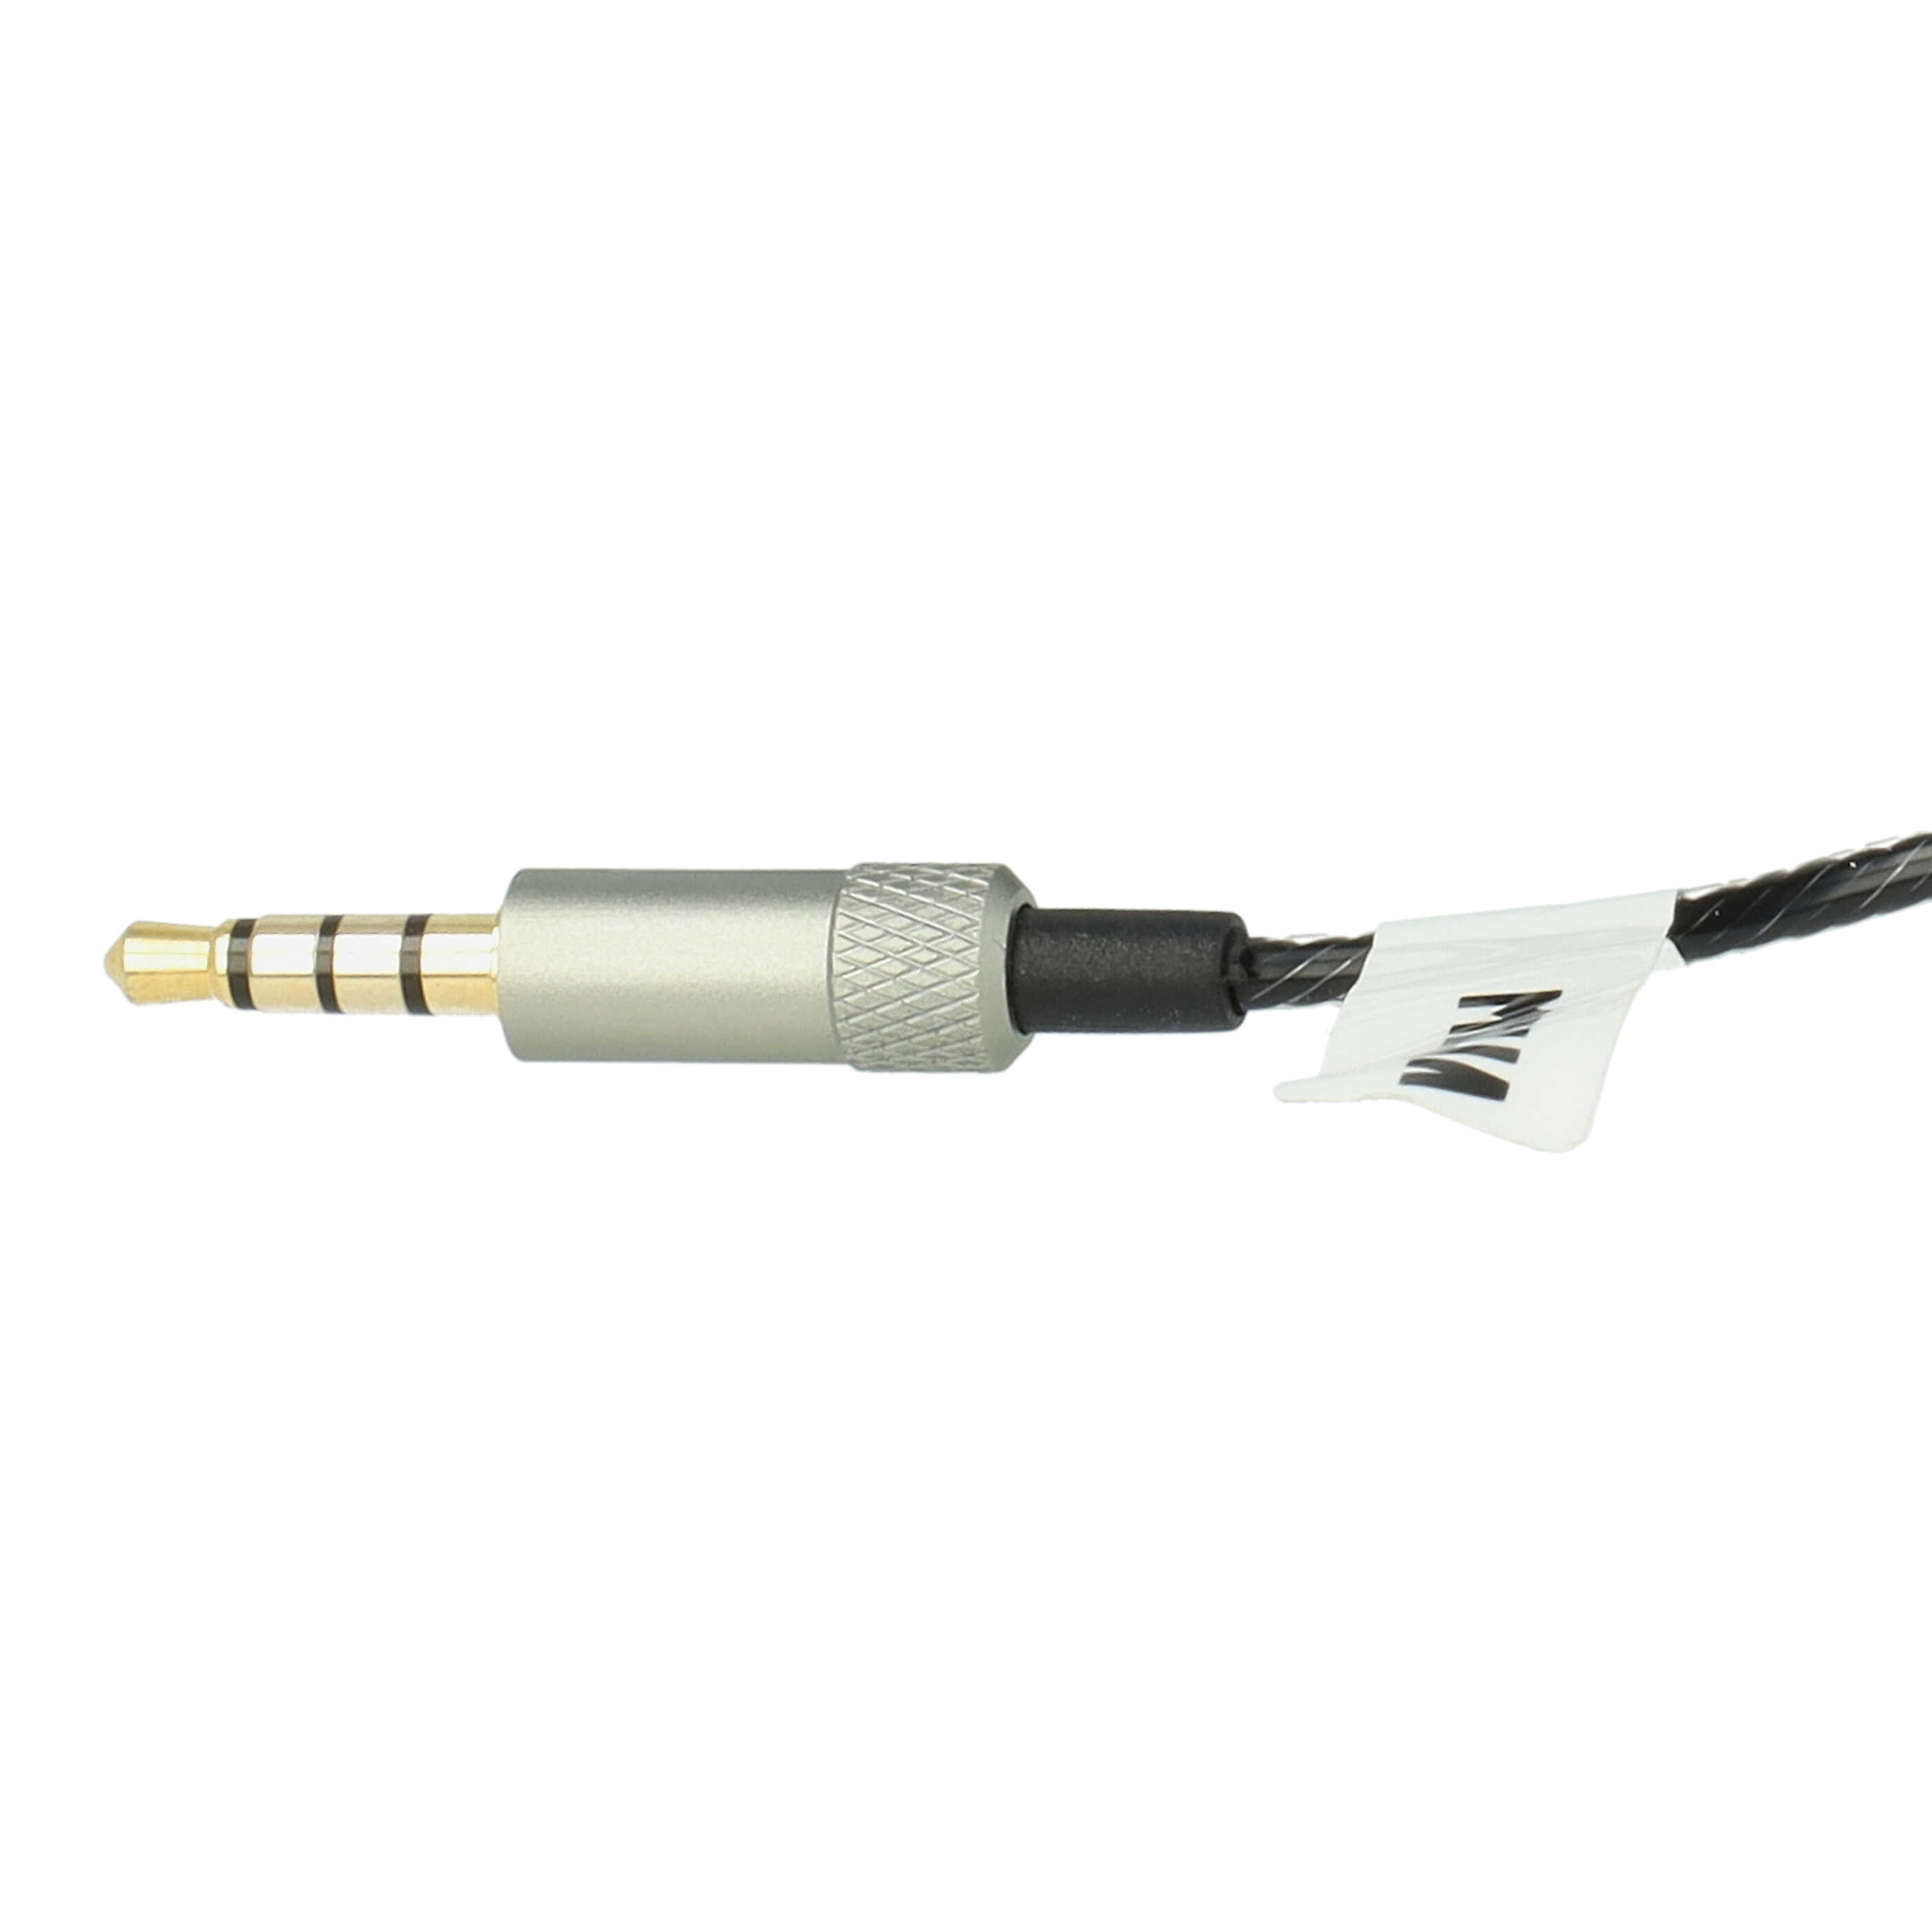 Cable audio AUX a conector jack de 3,5 mm para auriculares Sennheiser IE8, IE80